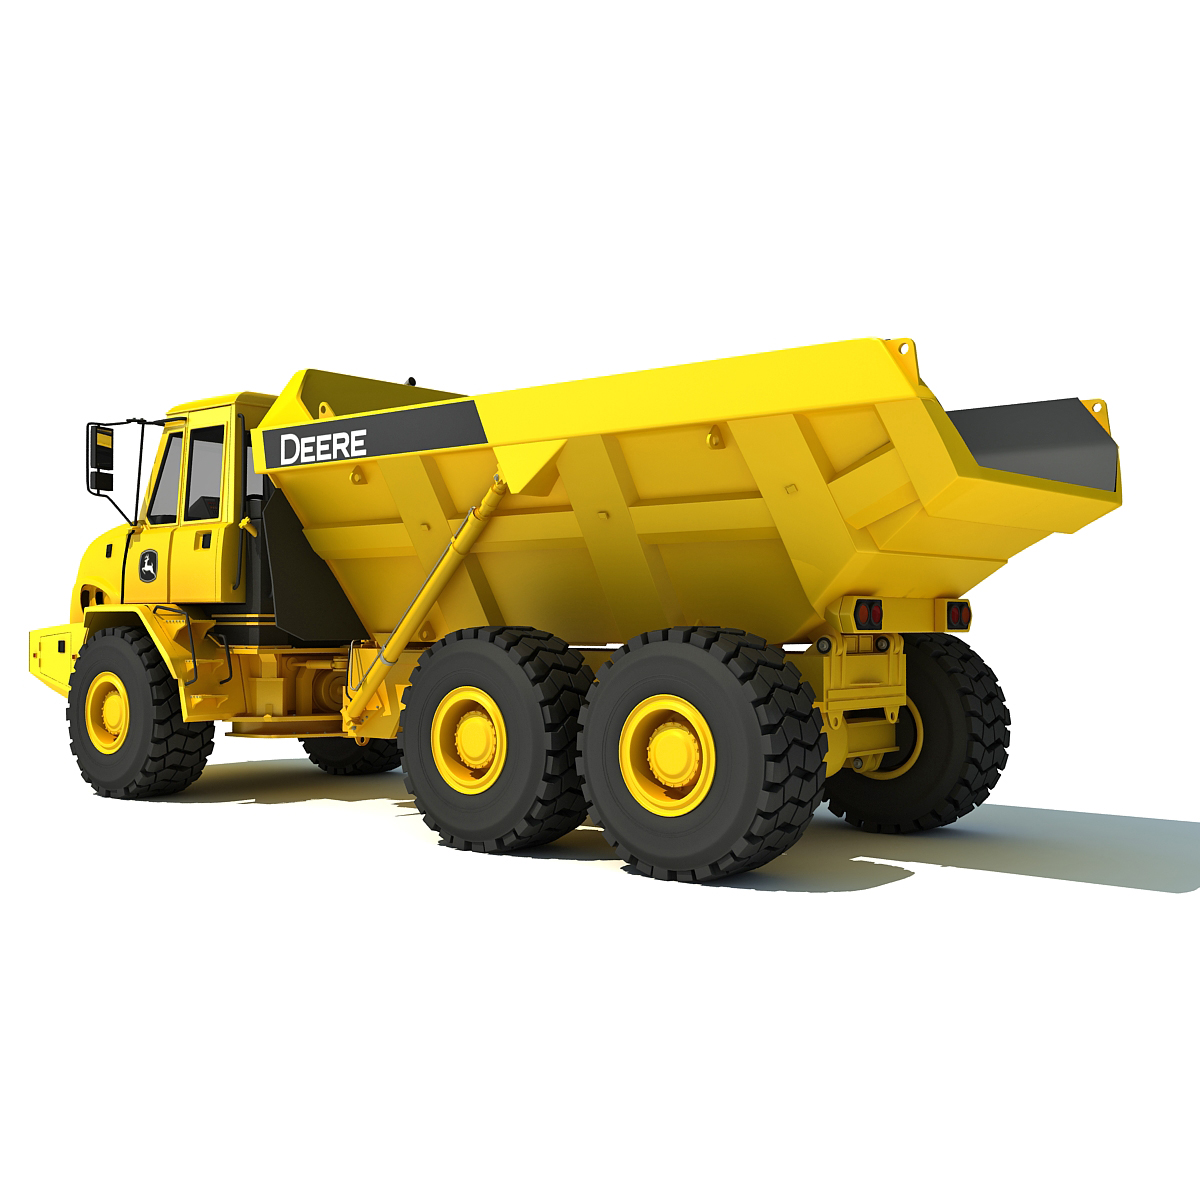 3D Model of John Deere 300D Articulated Dump Truck | 3D Models